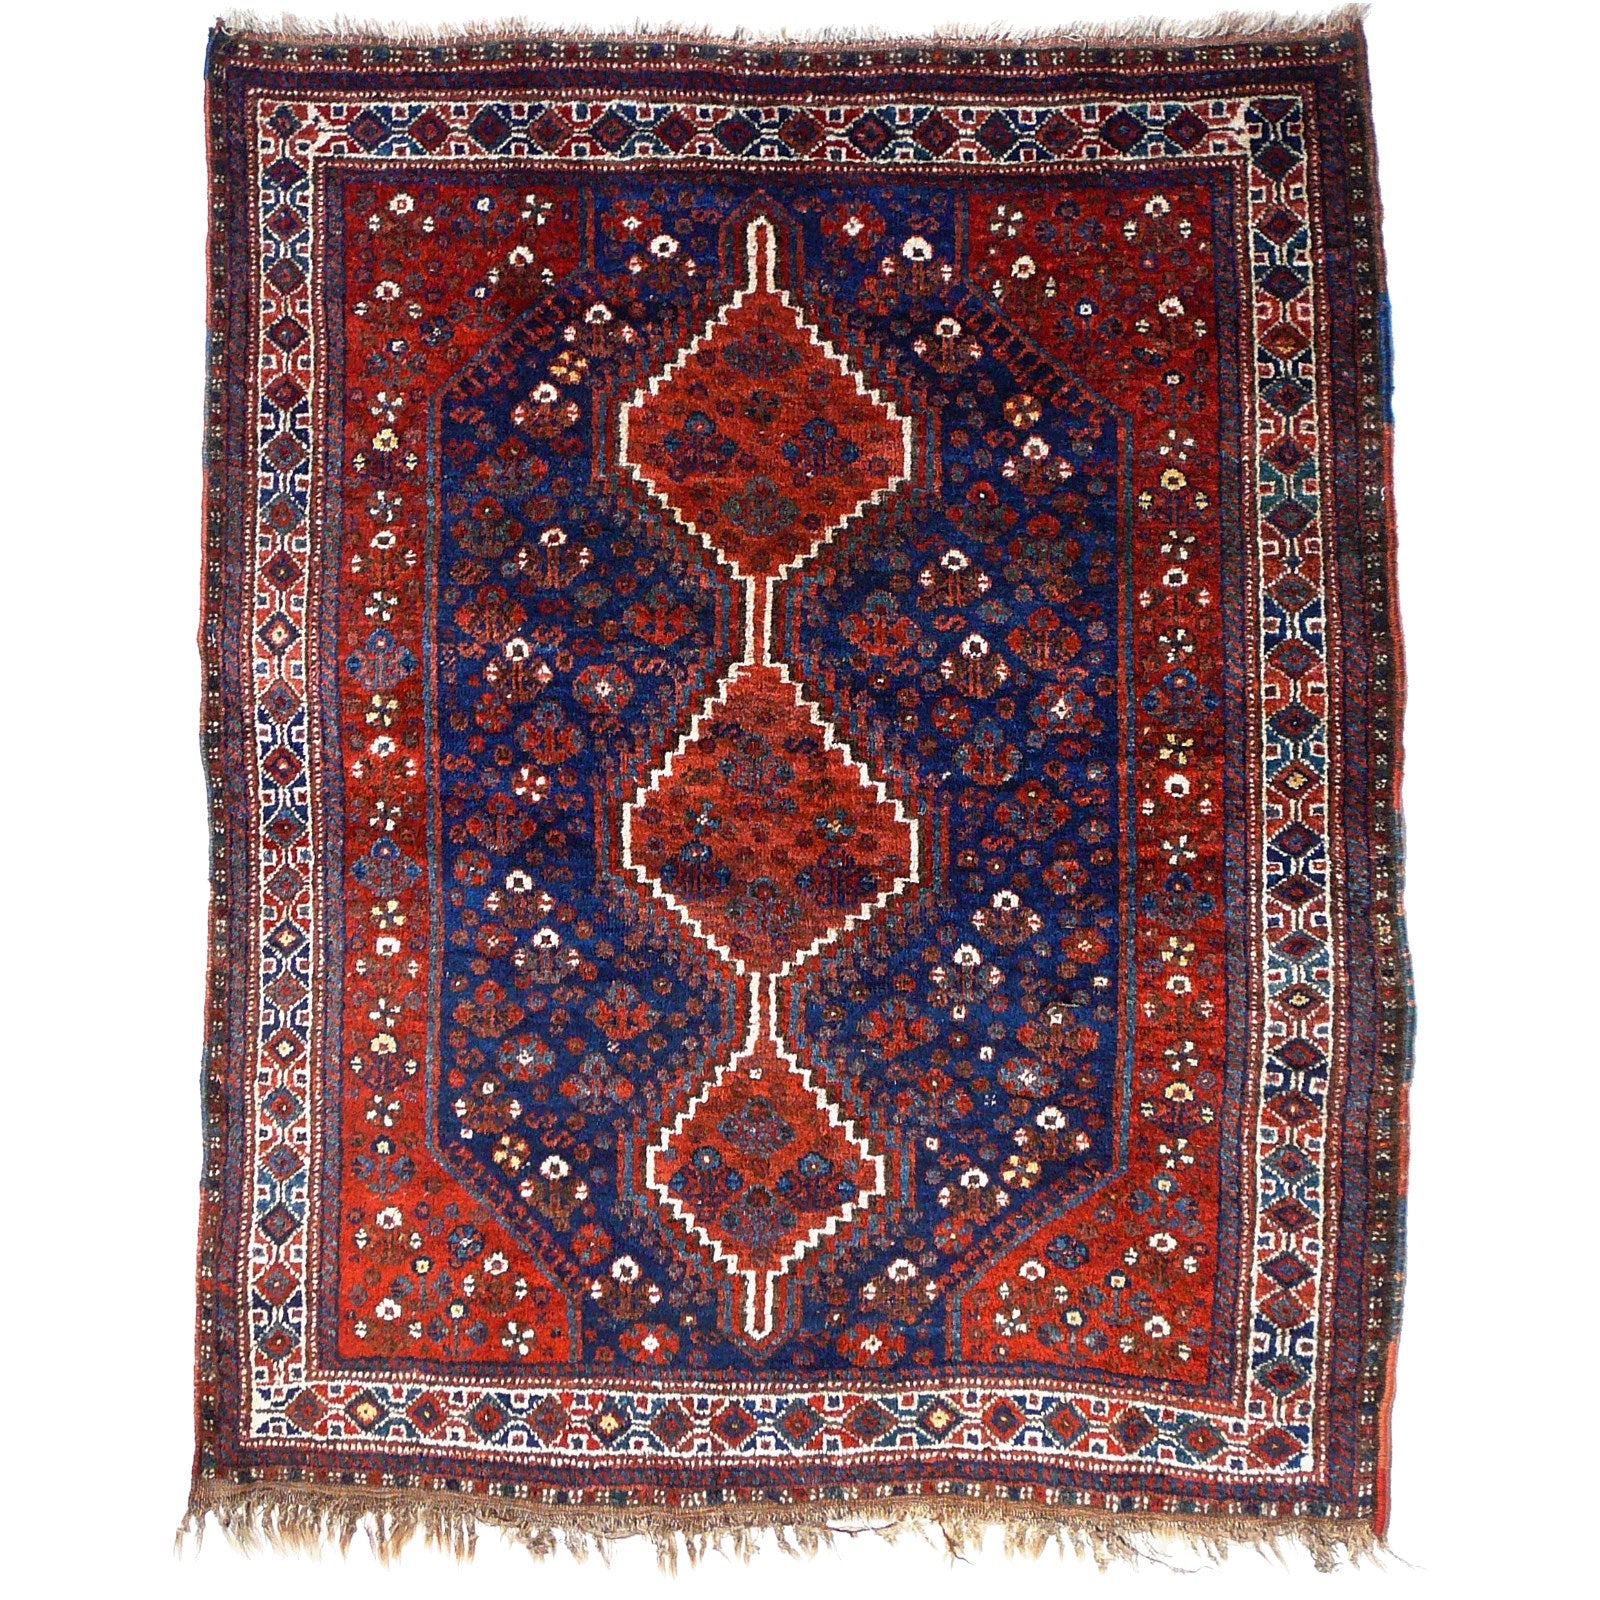 Qashqai tribal rugs